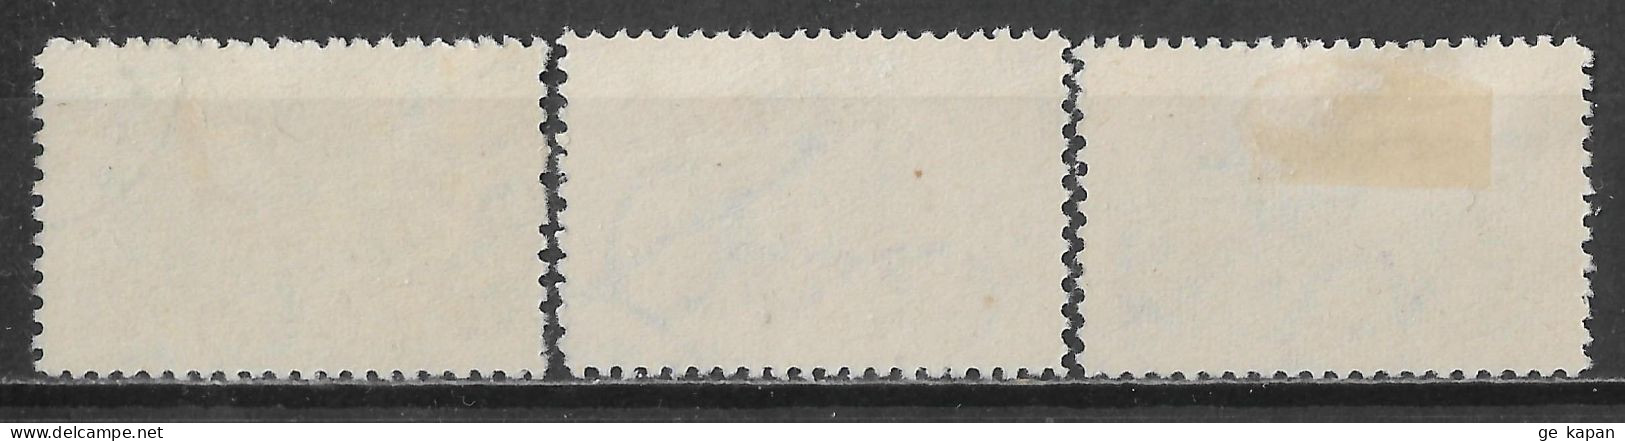 1963 CUBA SET OF 3 USED STAMPS (Michel # 853,854,858) CV €1.70 - Oblitérés